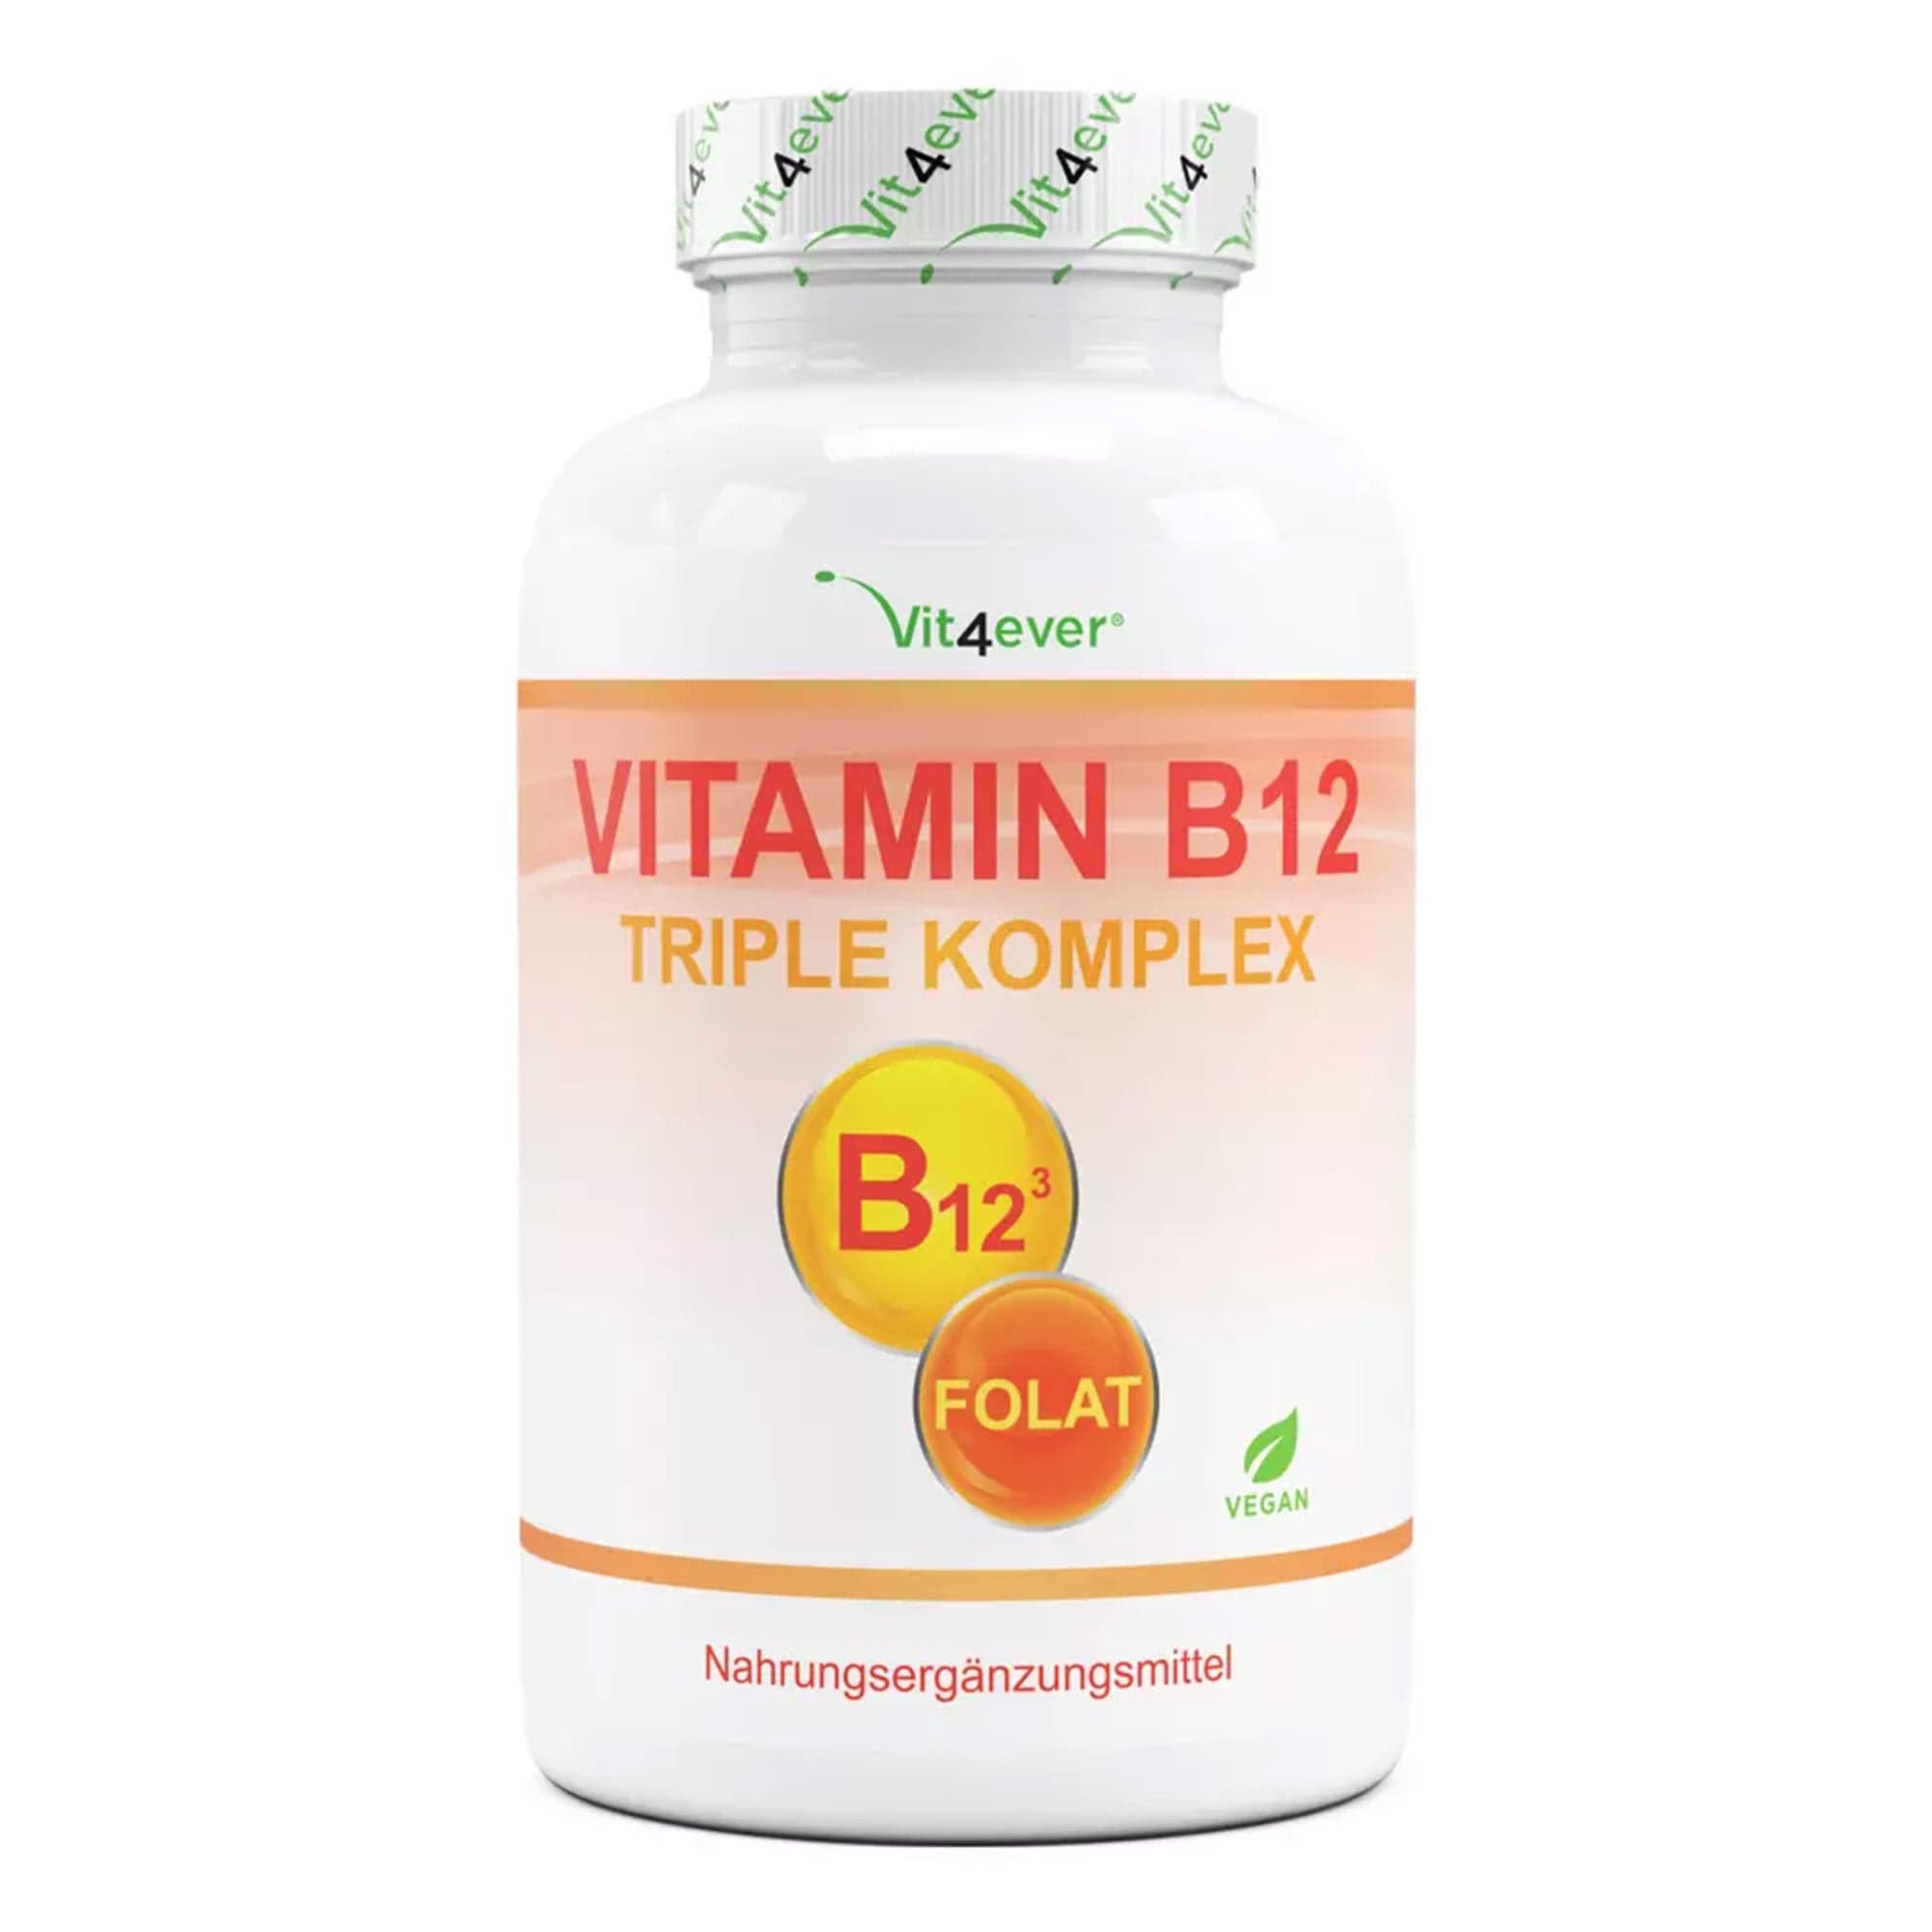 Vitamine B12 Folat | Triple Complex | 240 Tabletten | Vit4ever